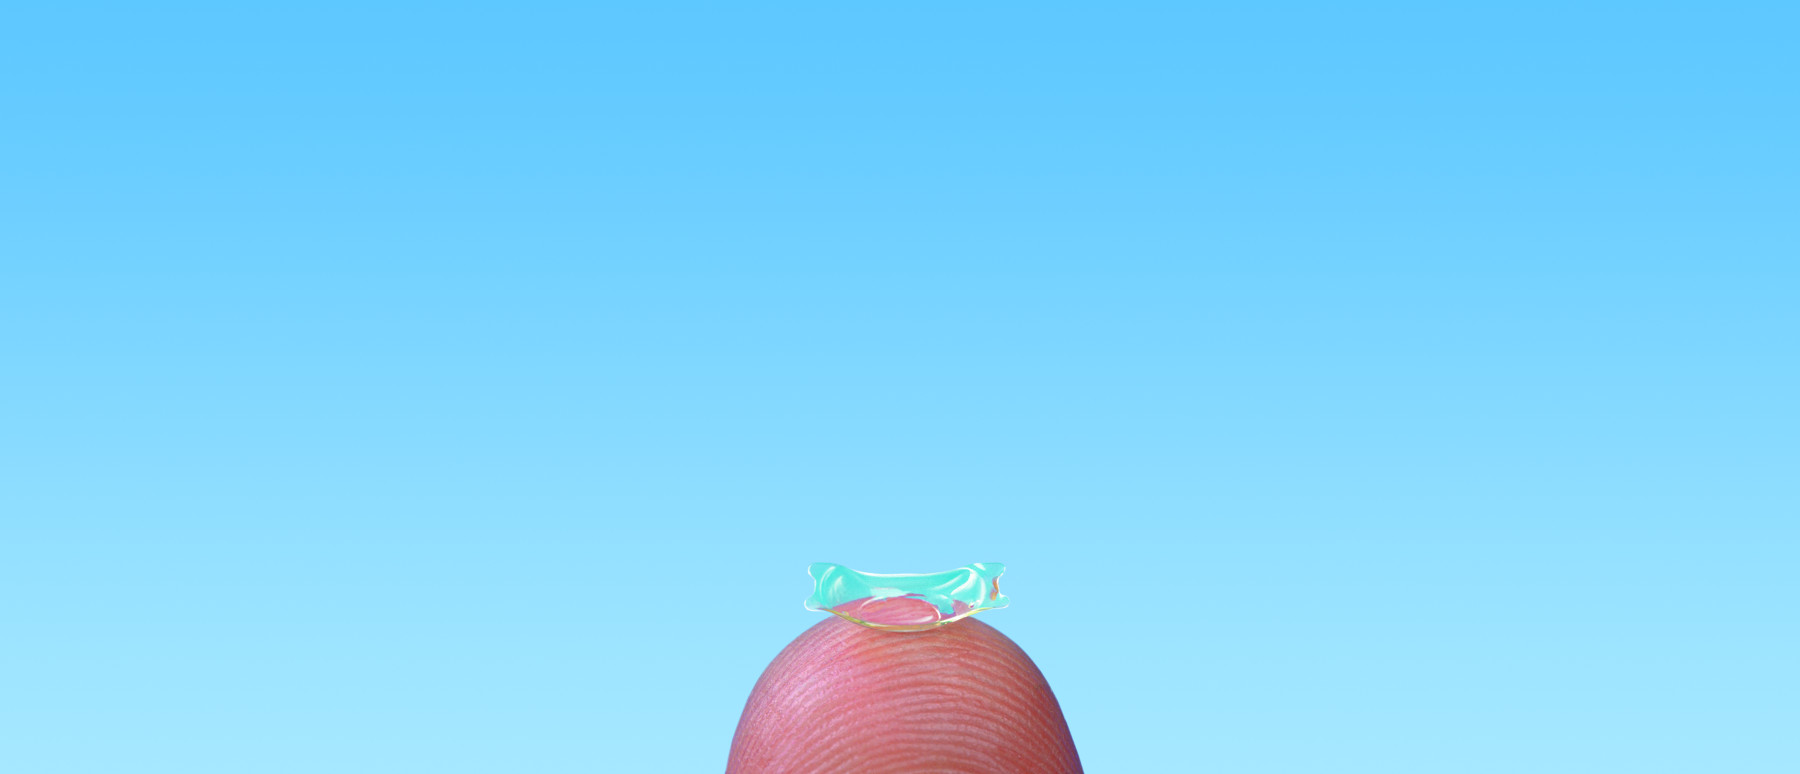 Bild zeigt eine implantierbare Kontaktlinse auf einer Fingerkuppe fotografiert